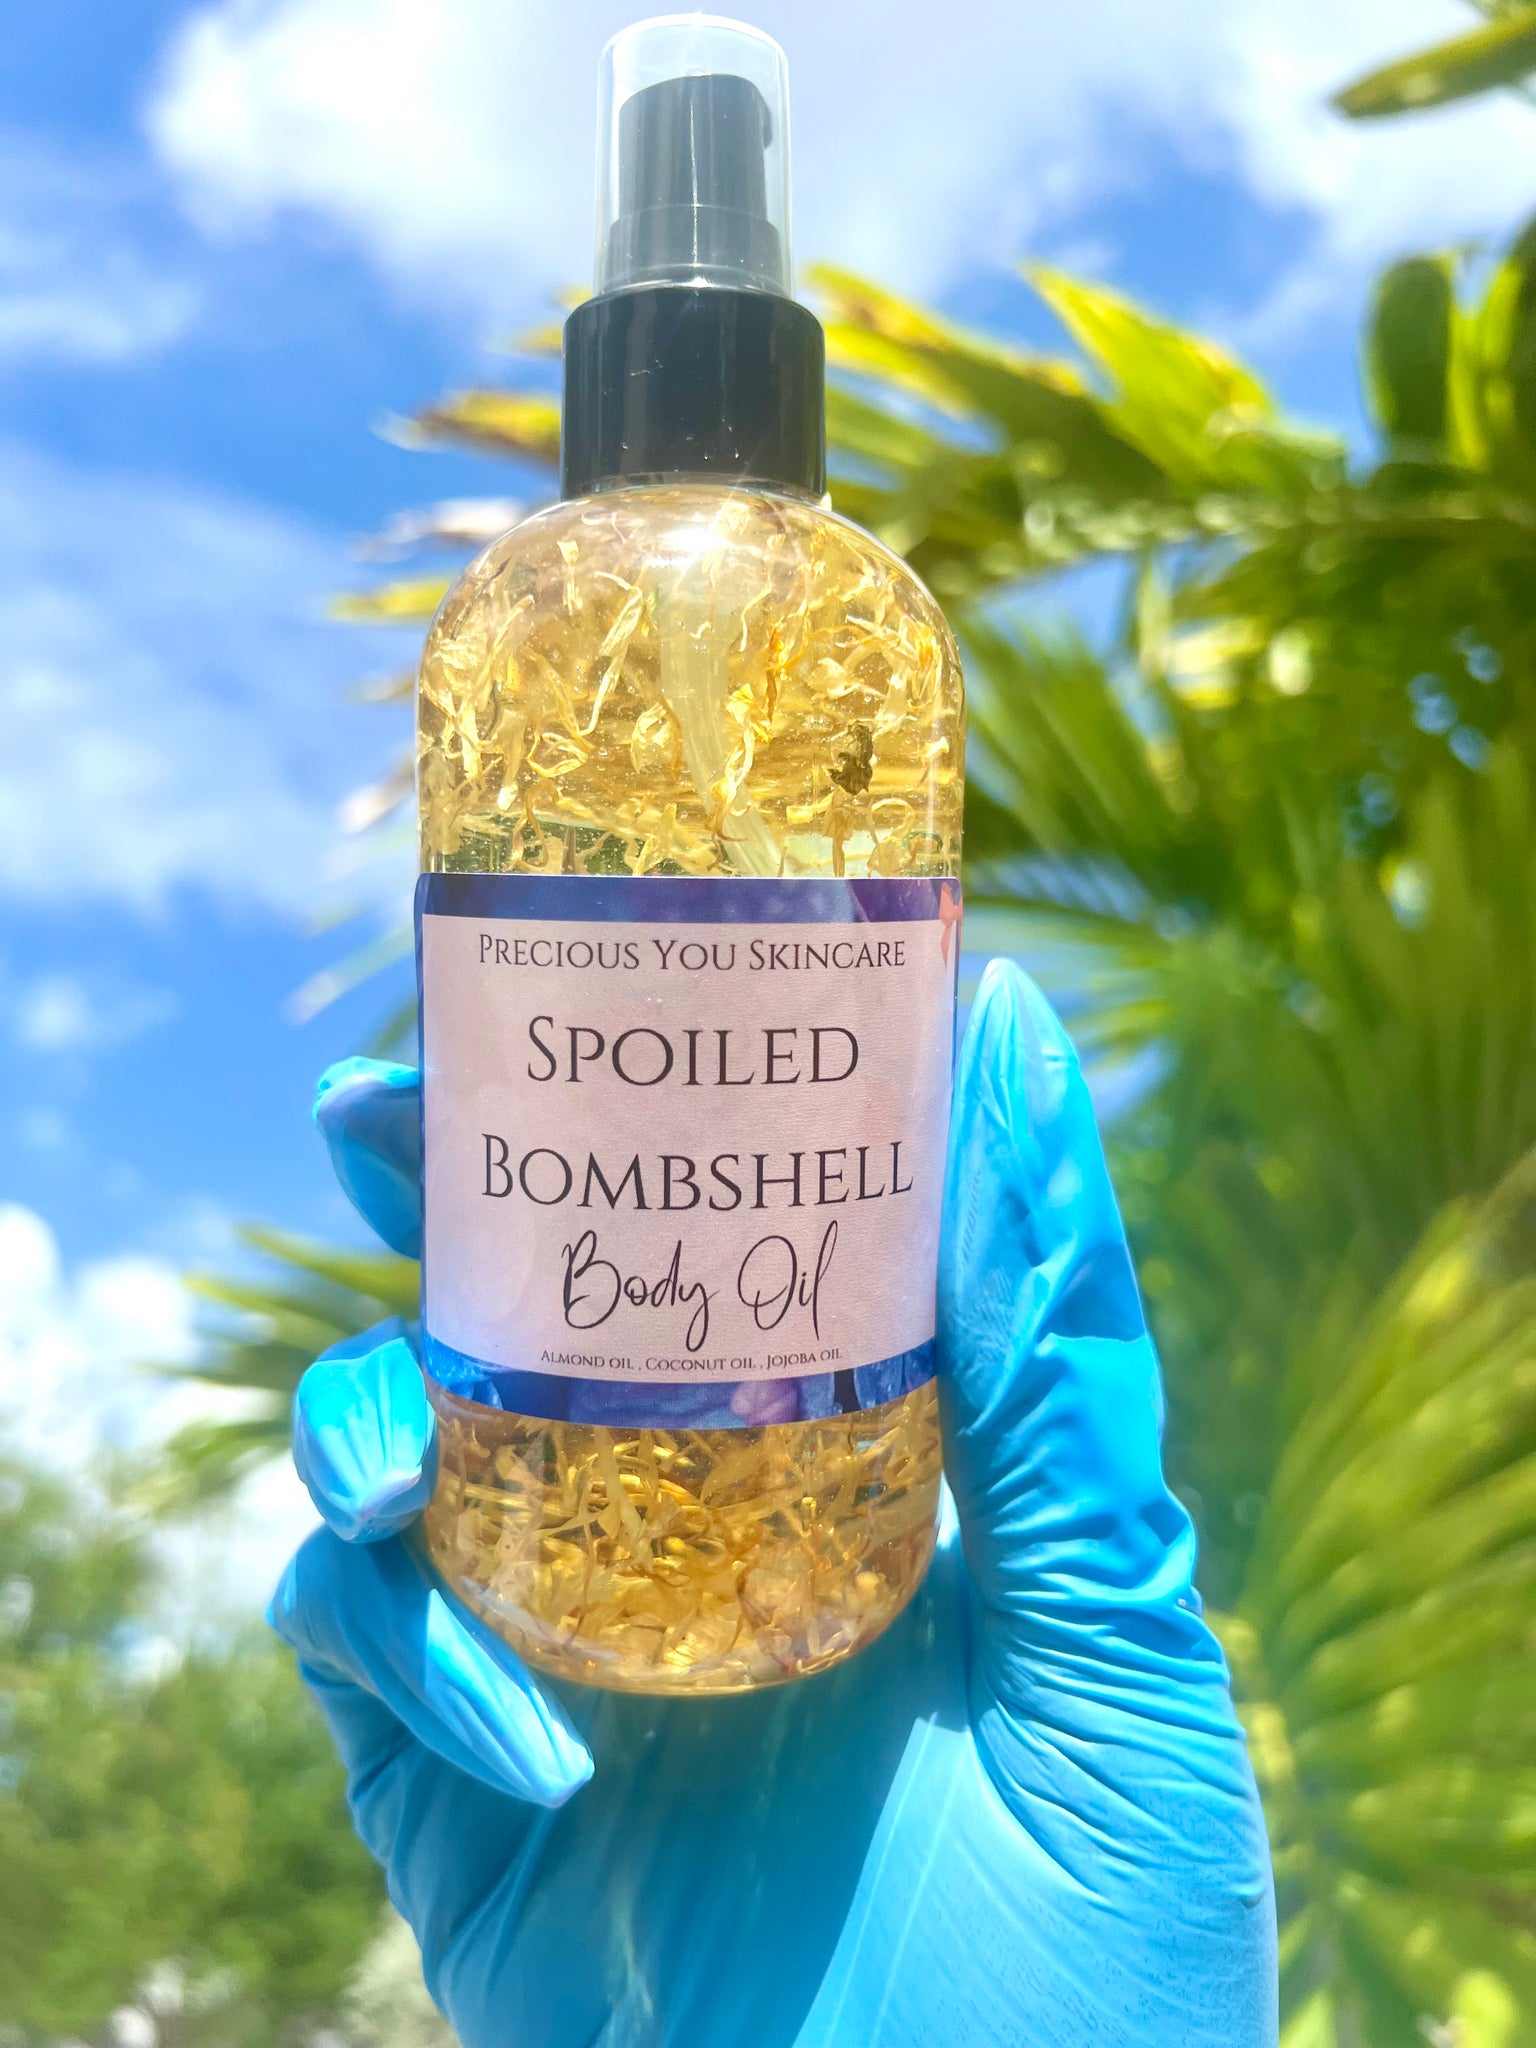 Spoiled Bombshell body oil